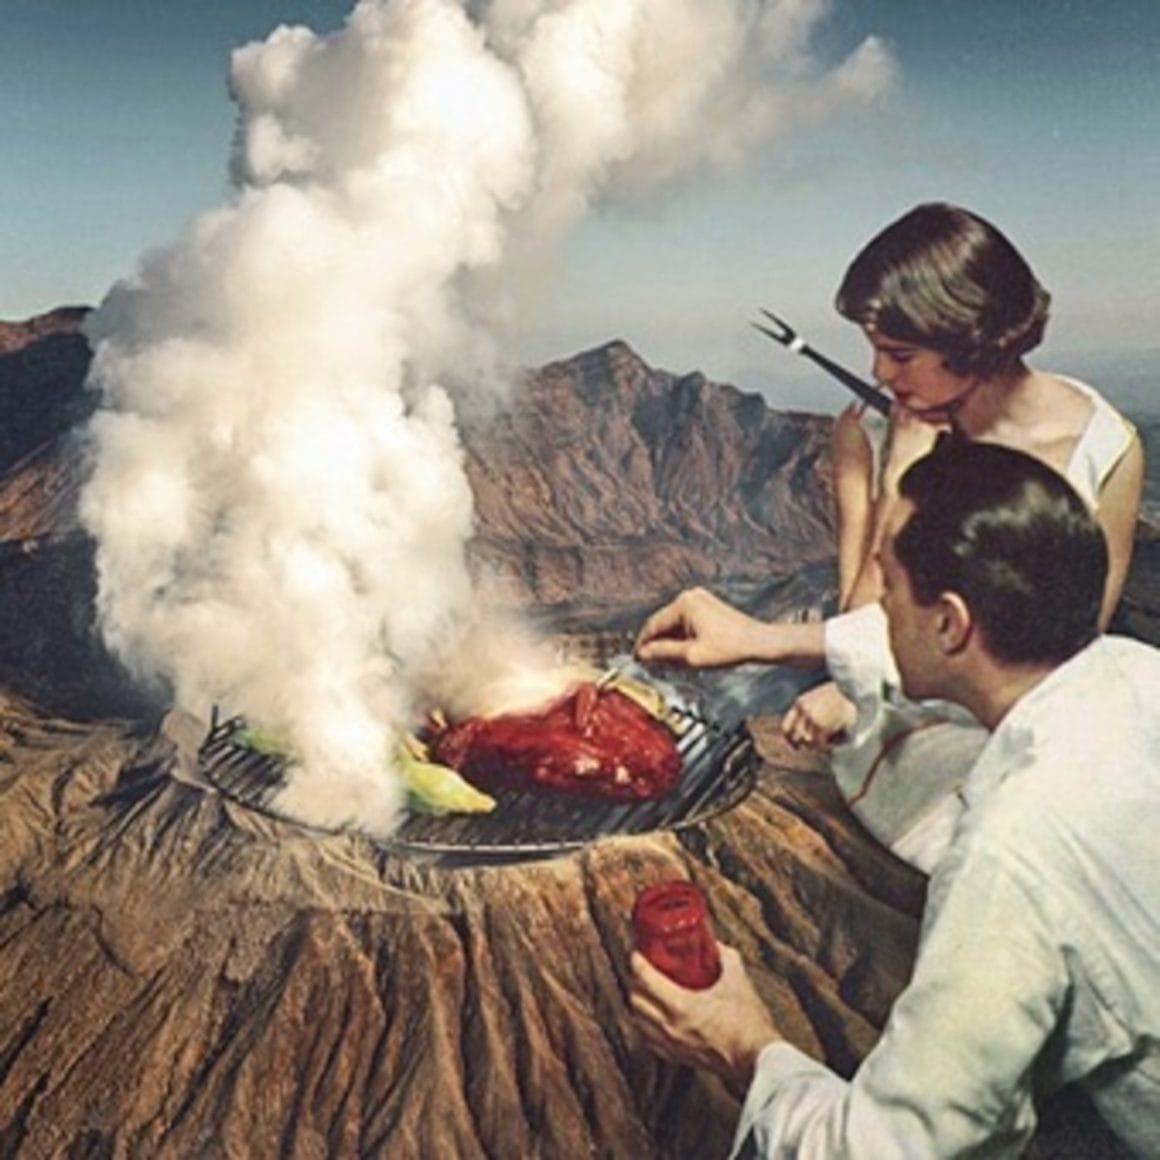 Dans l'univers de Mohanad Shuraideh, les barbecues se font sur les volcans